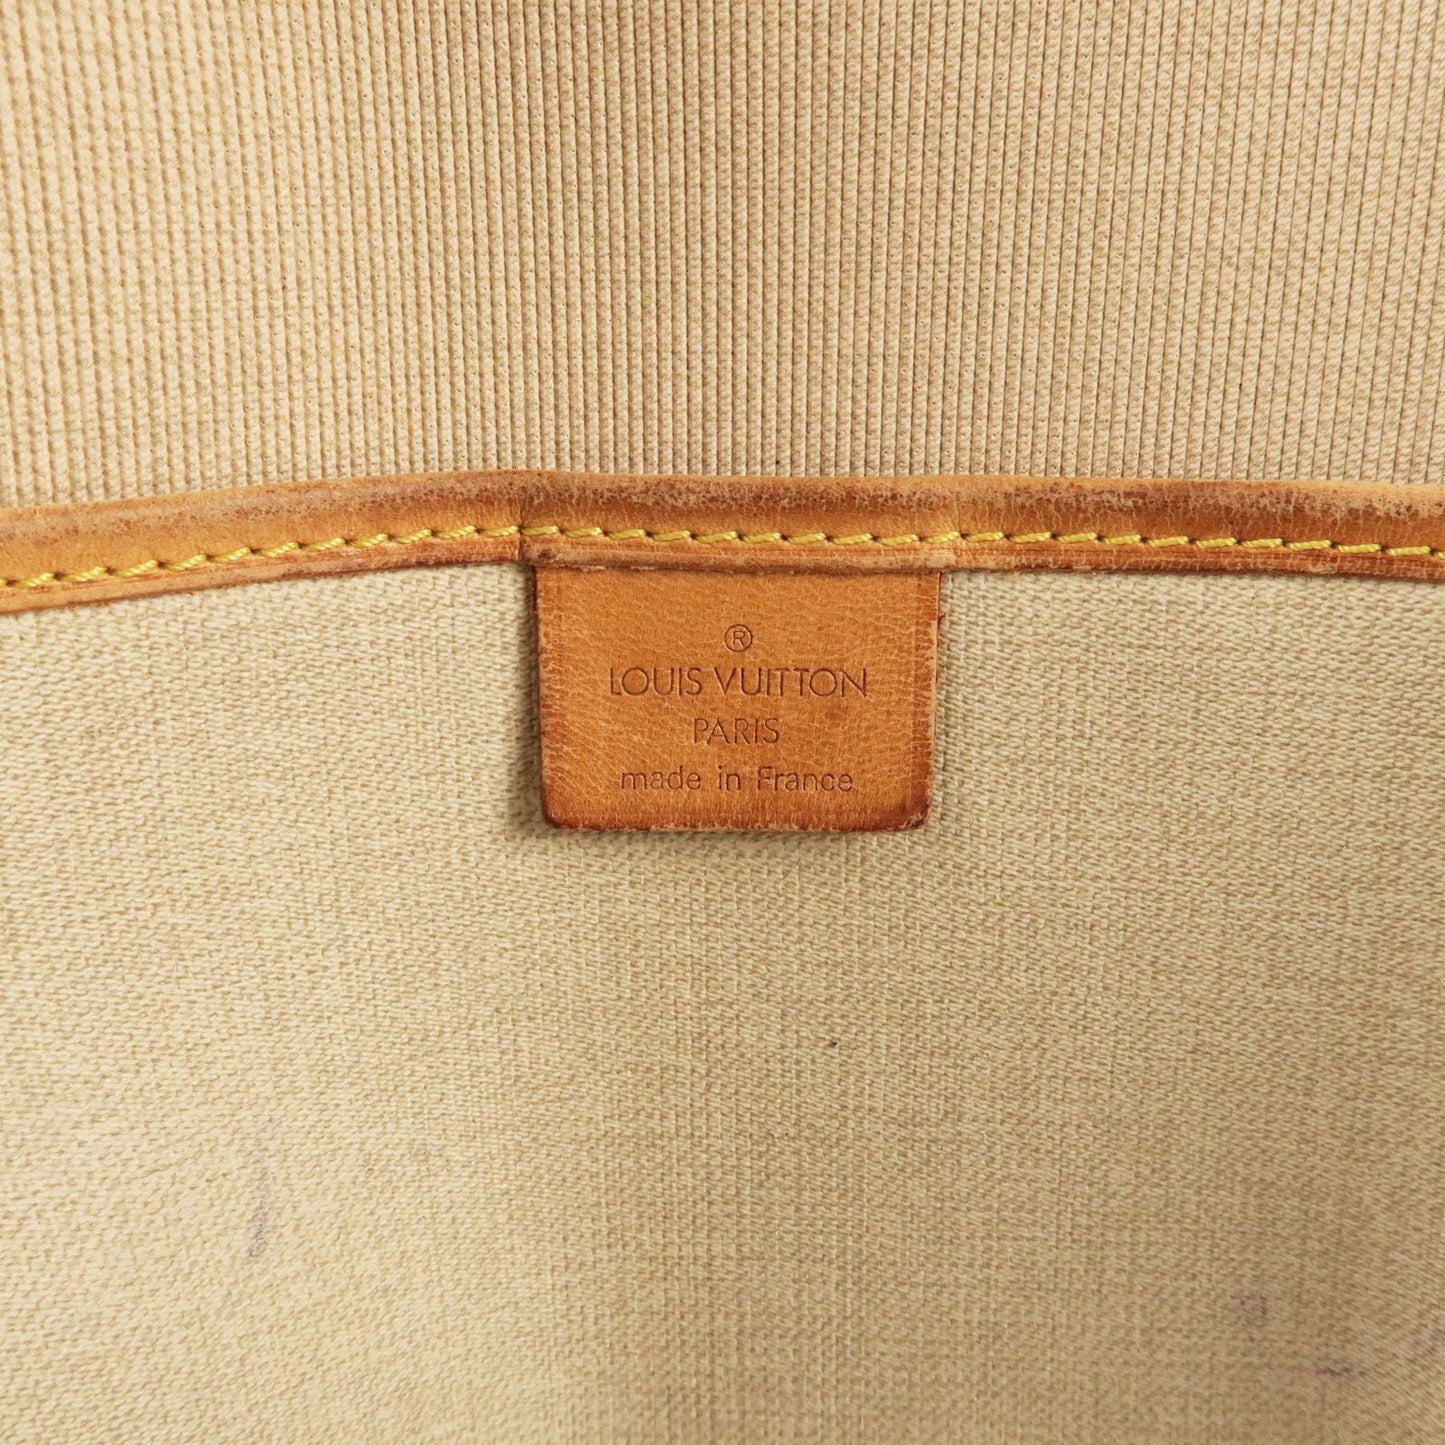 Authentic Louis Vuitton Excursion Tote, M41450, Monogram, Brown